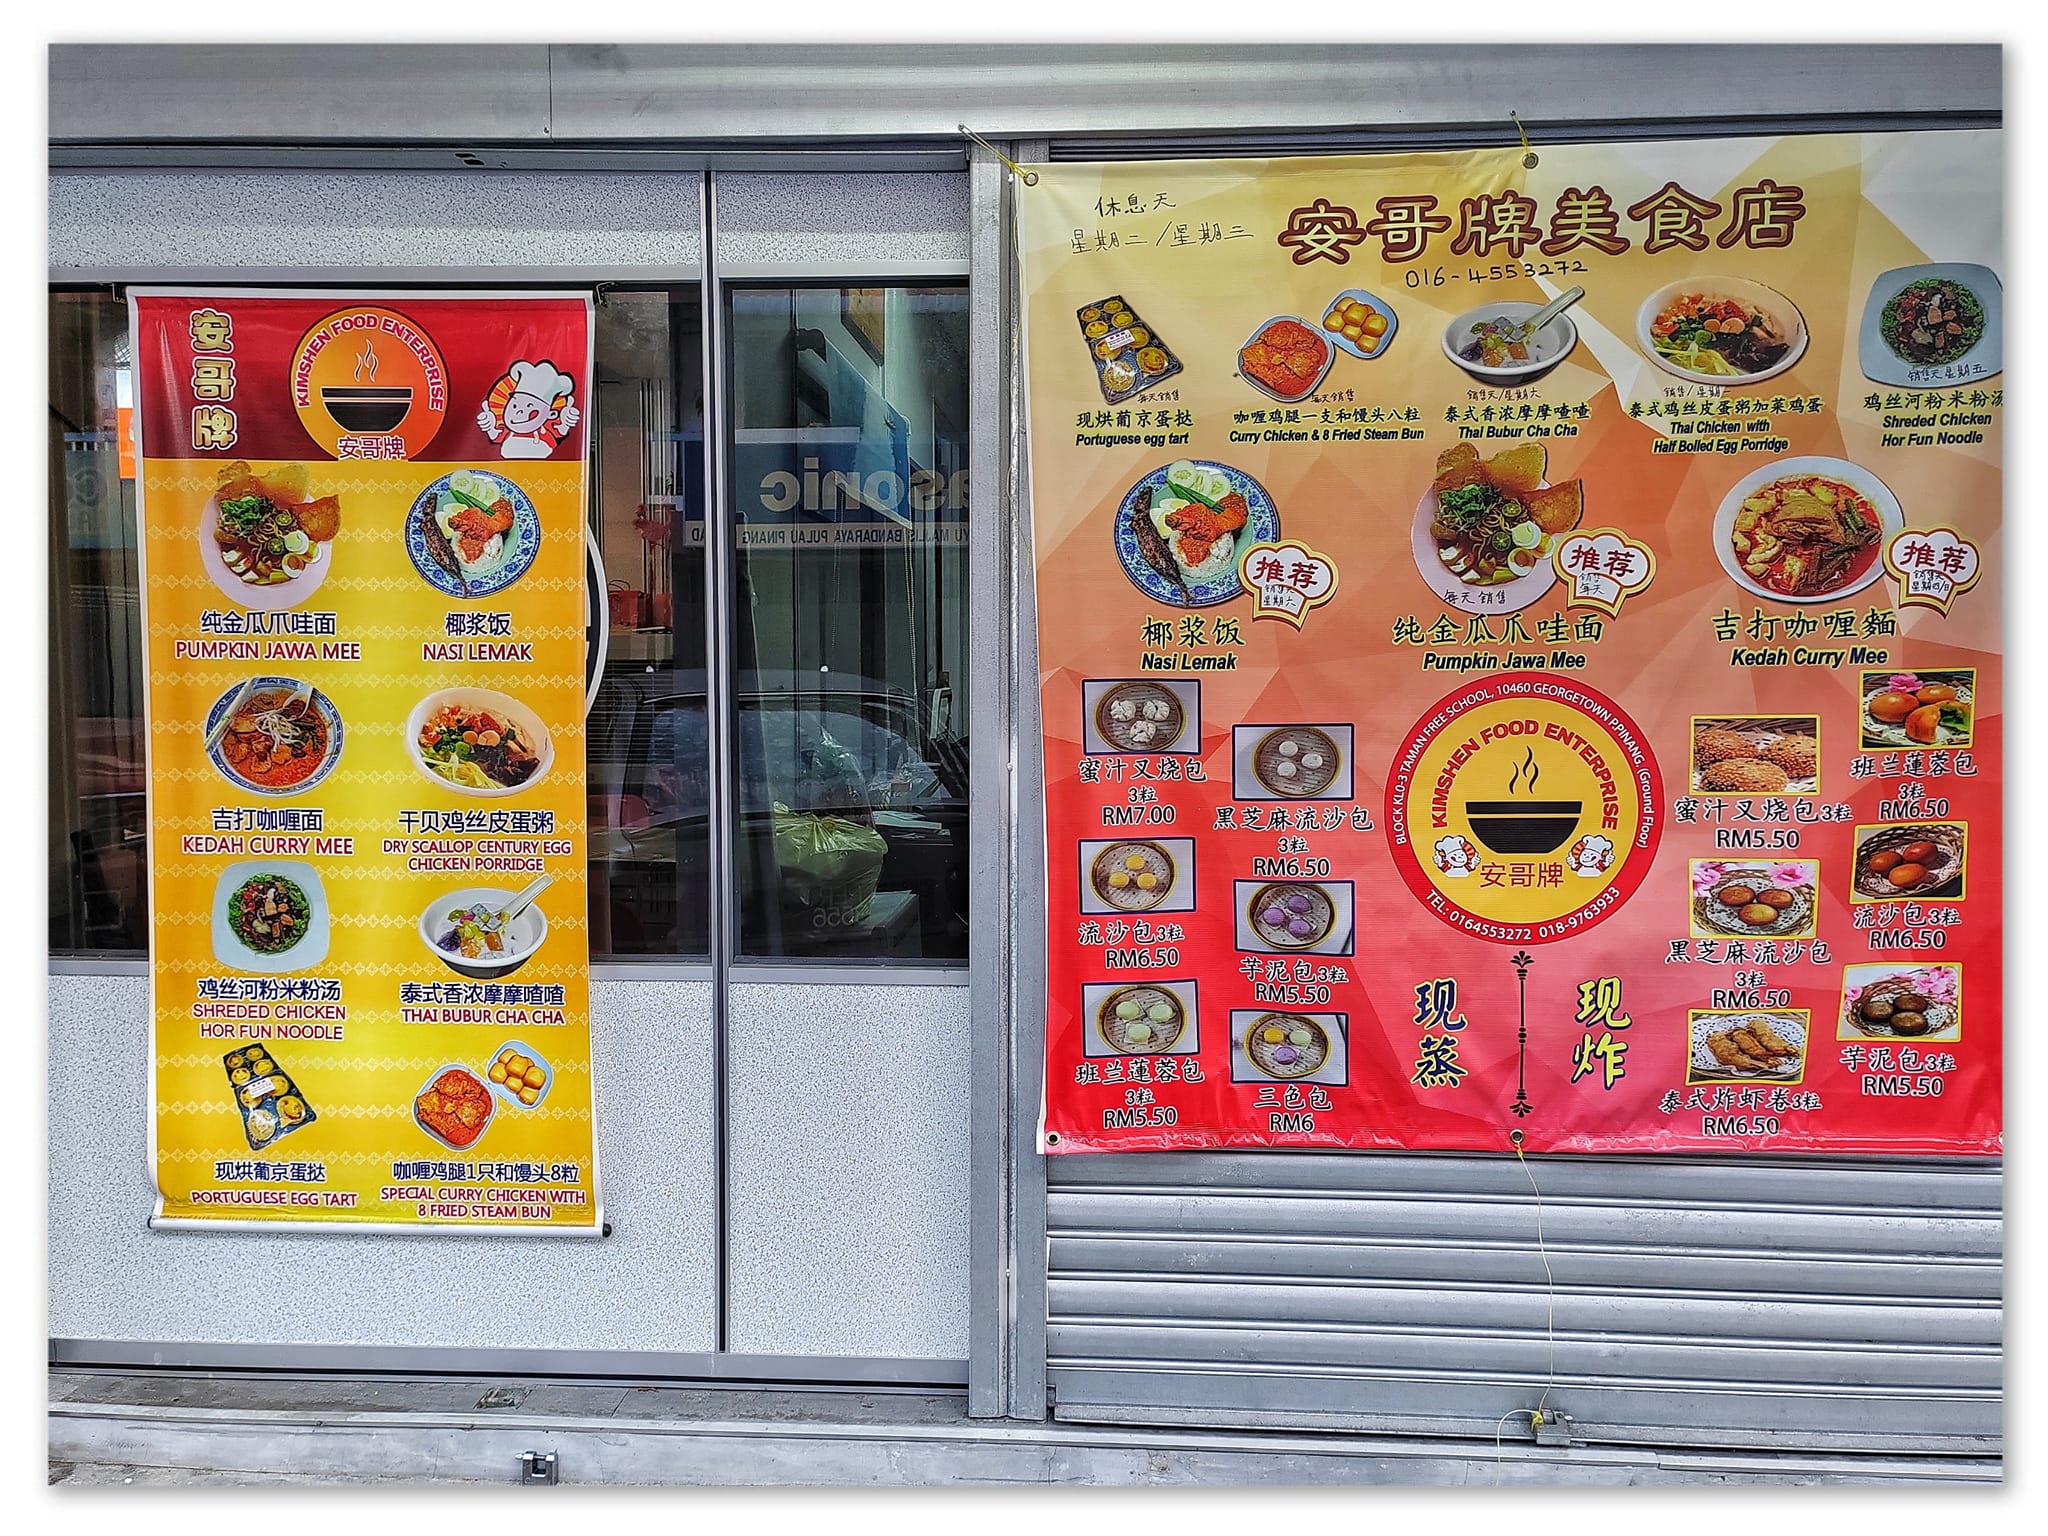 Kimshen Food Enterprise